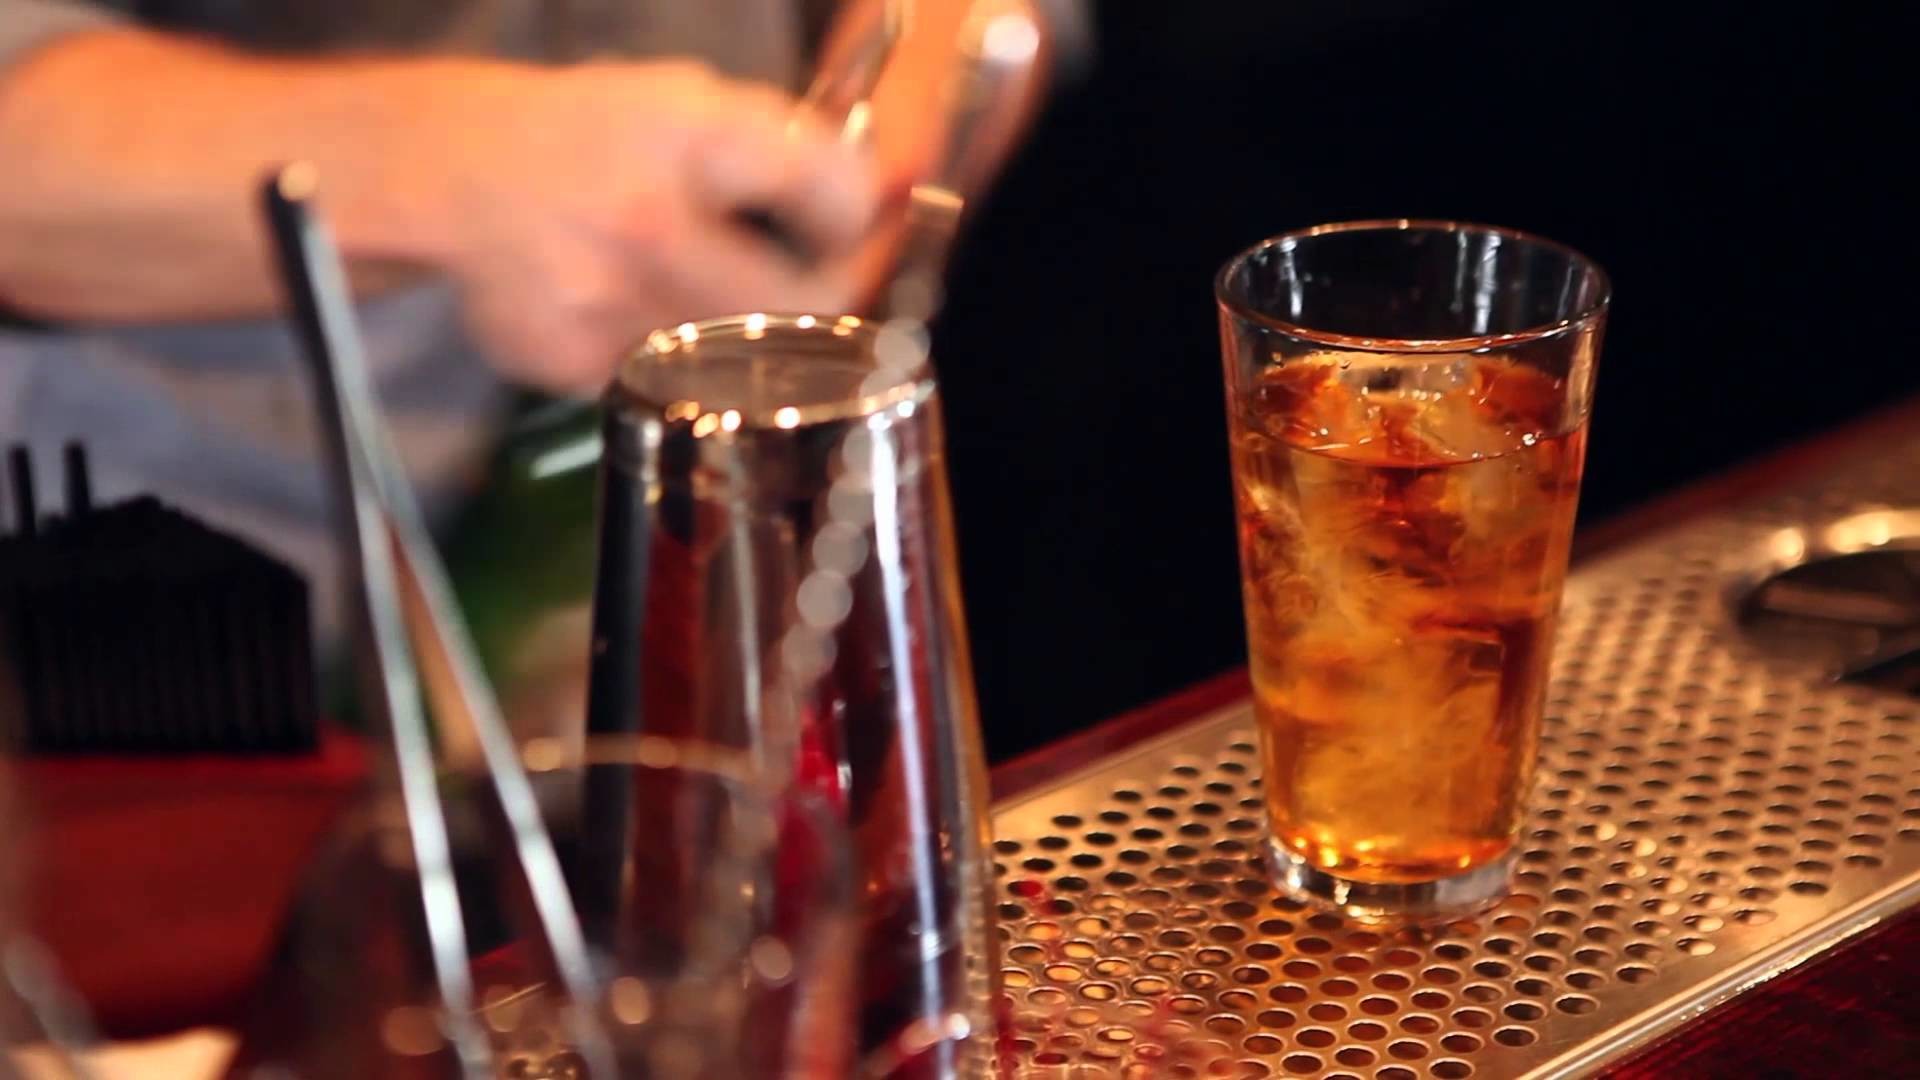 How to Make a Fireball Whisky Drink Fiery Manhattan